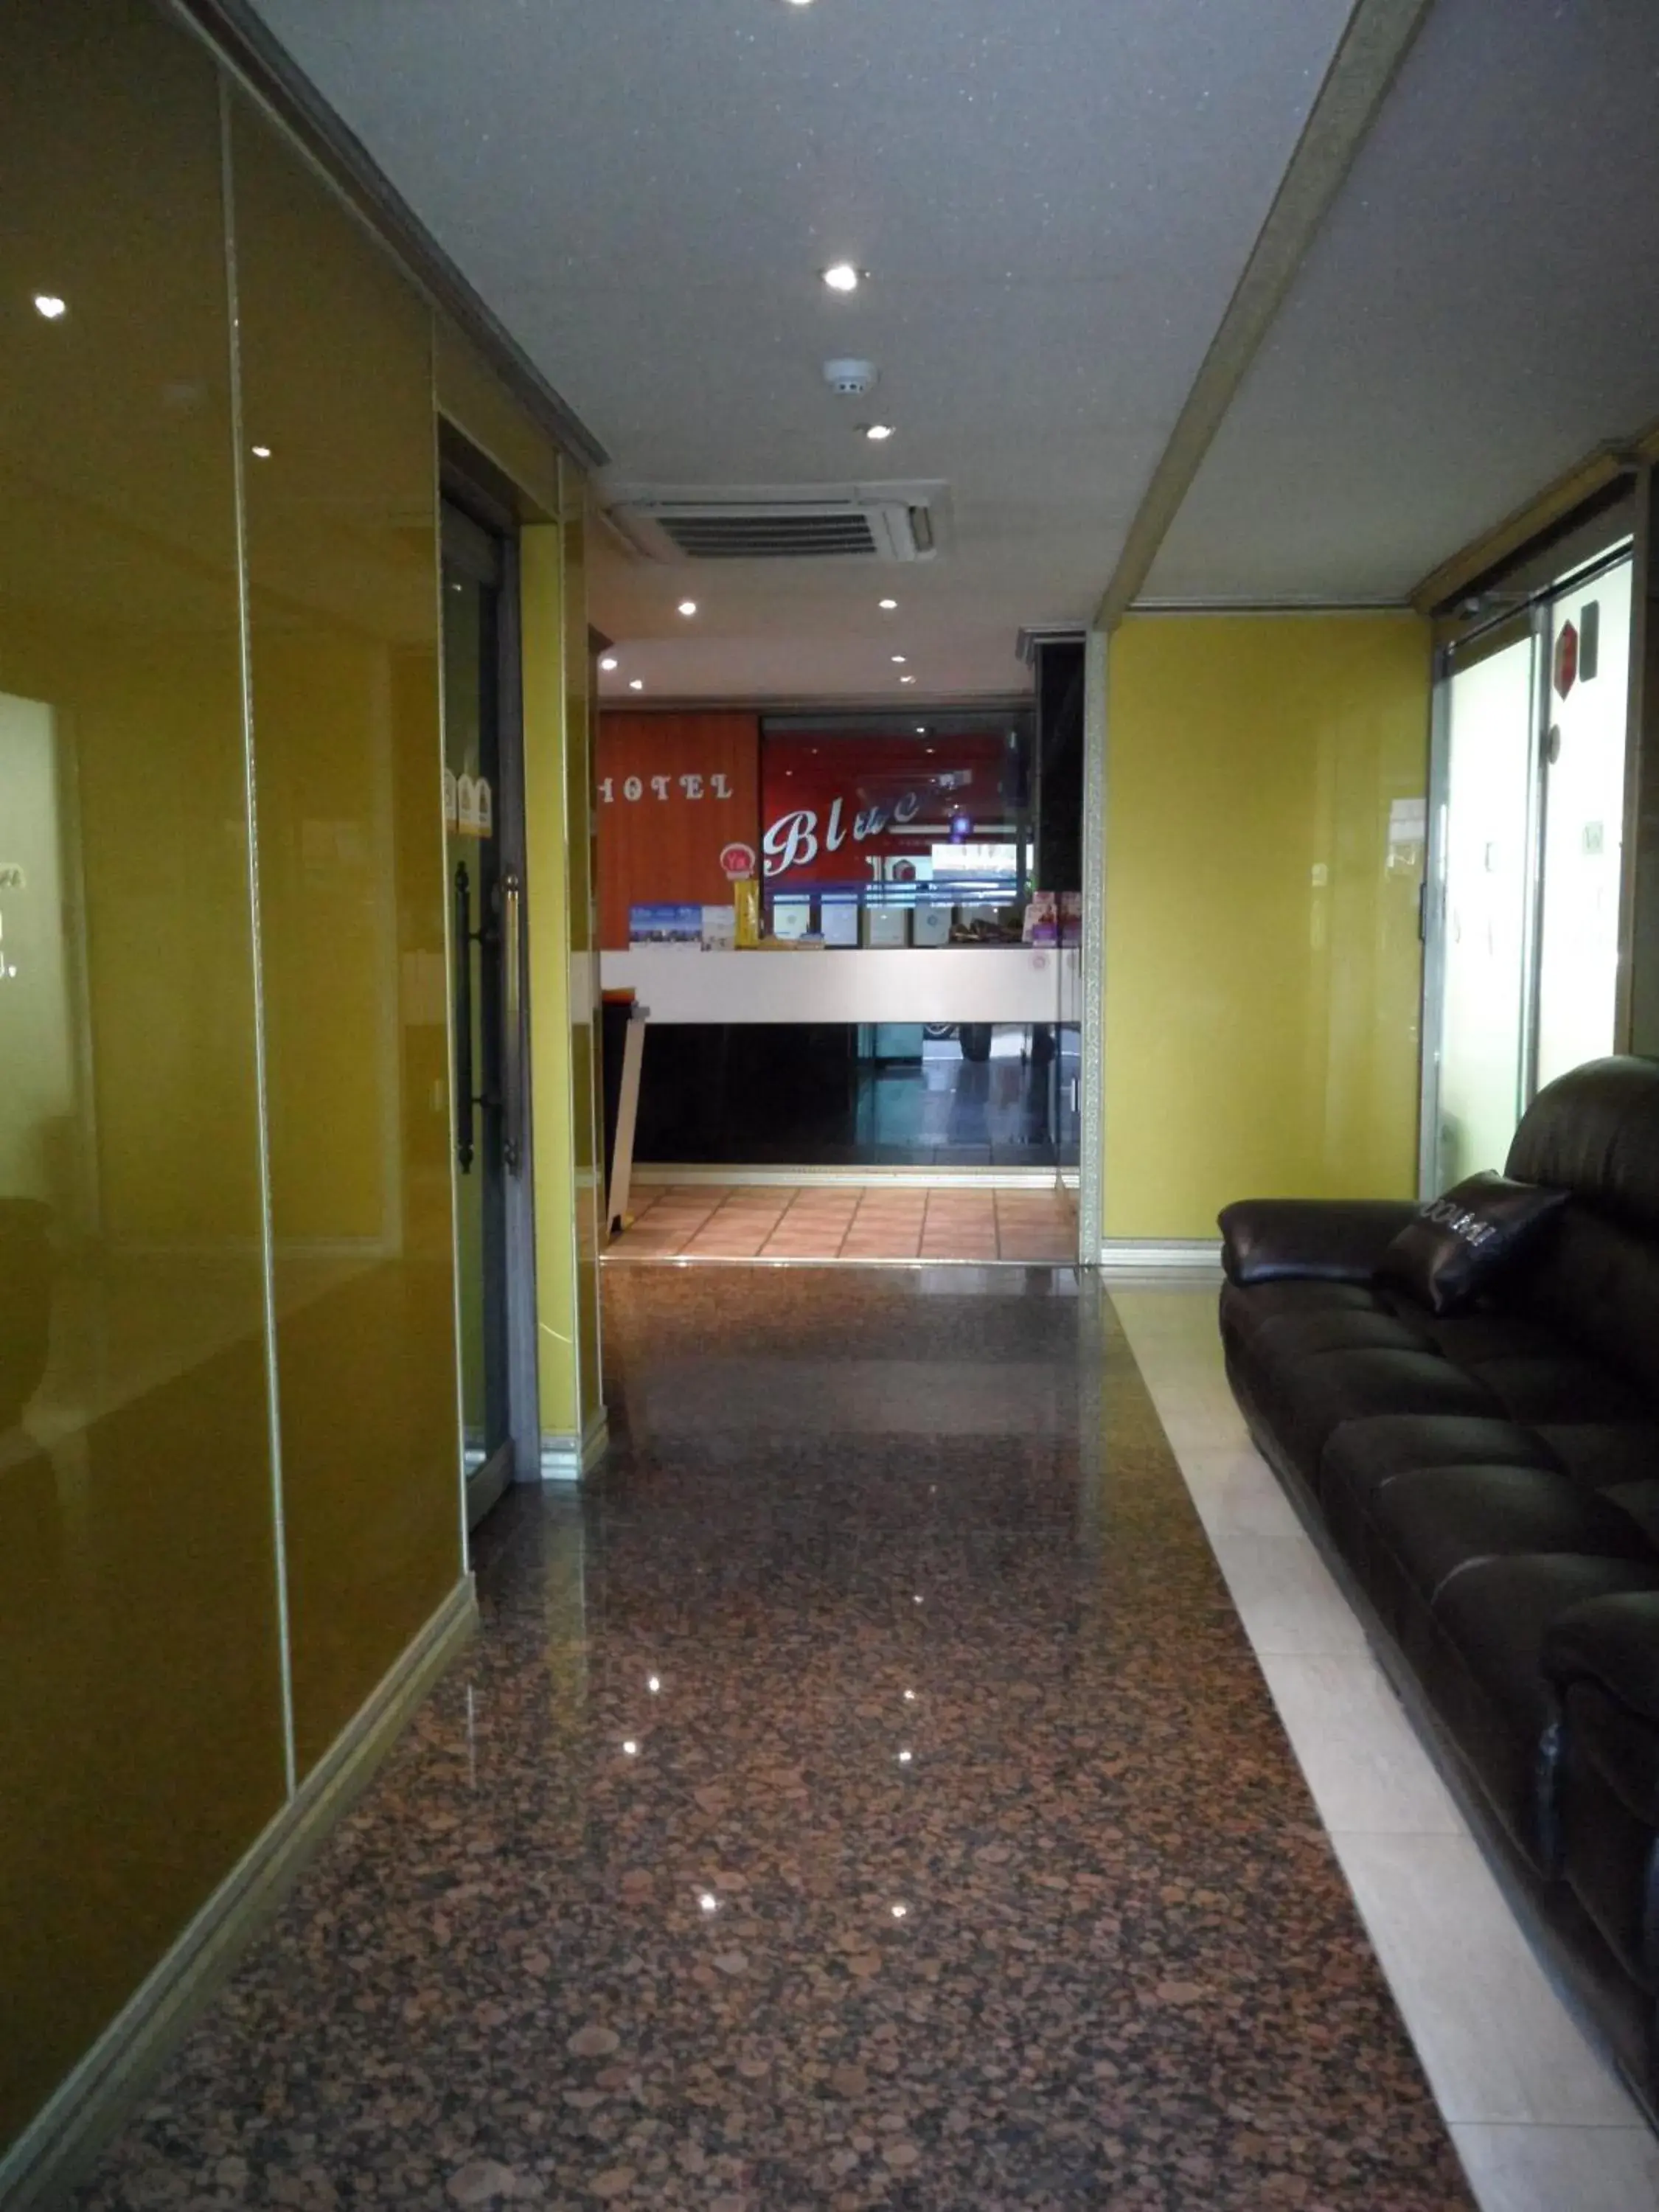 Lobby or reception, Lobby/Reception in Songdo Blue Hotel